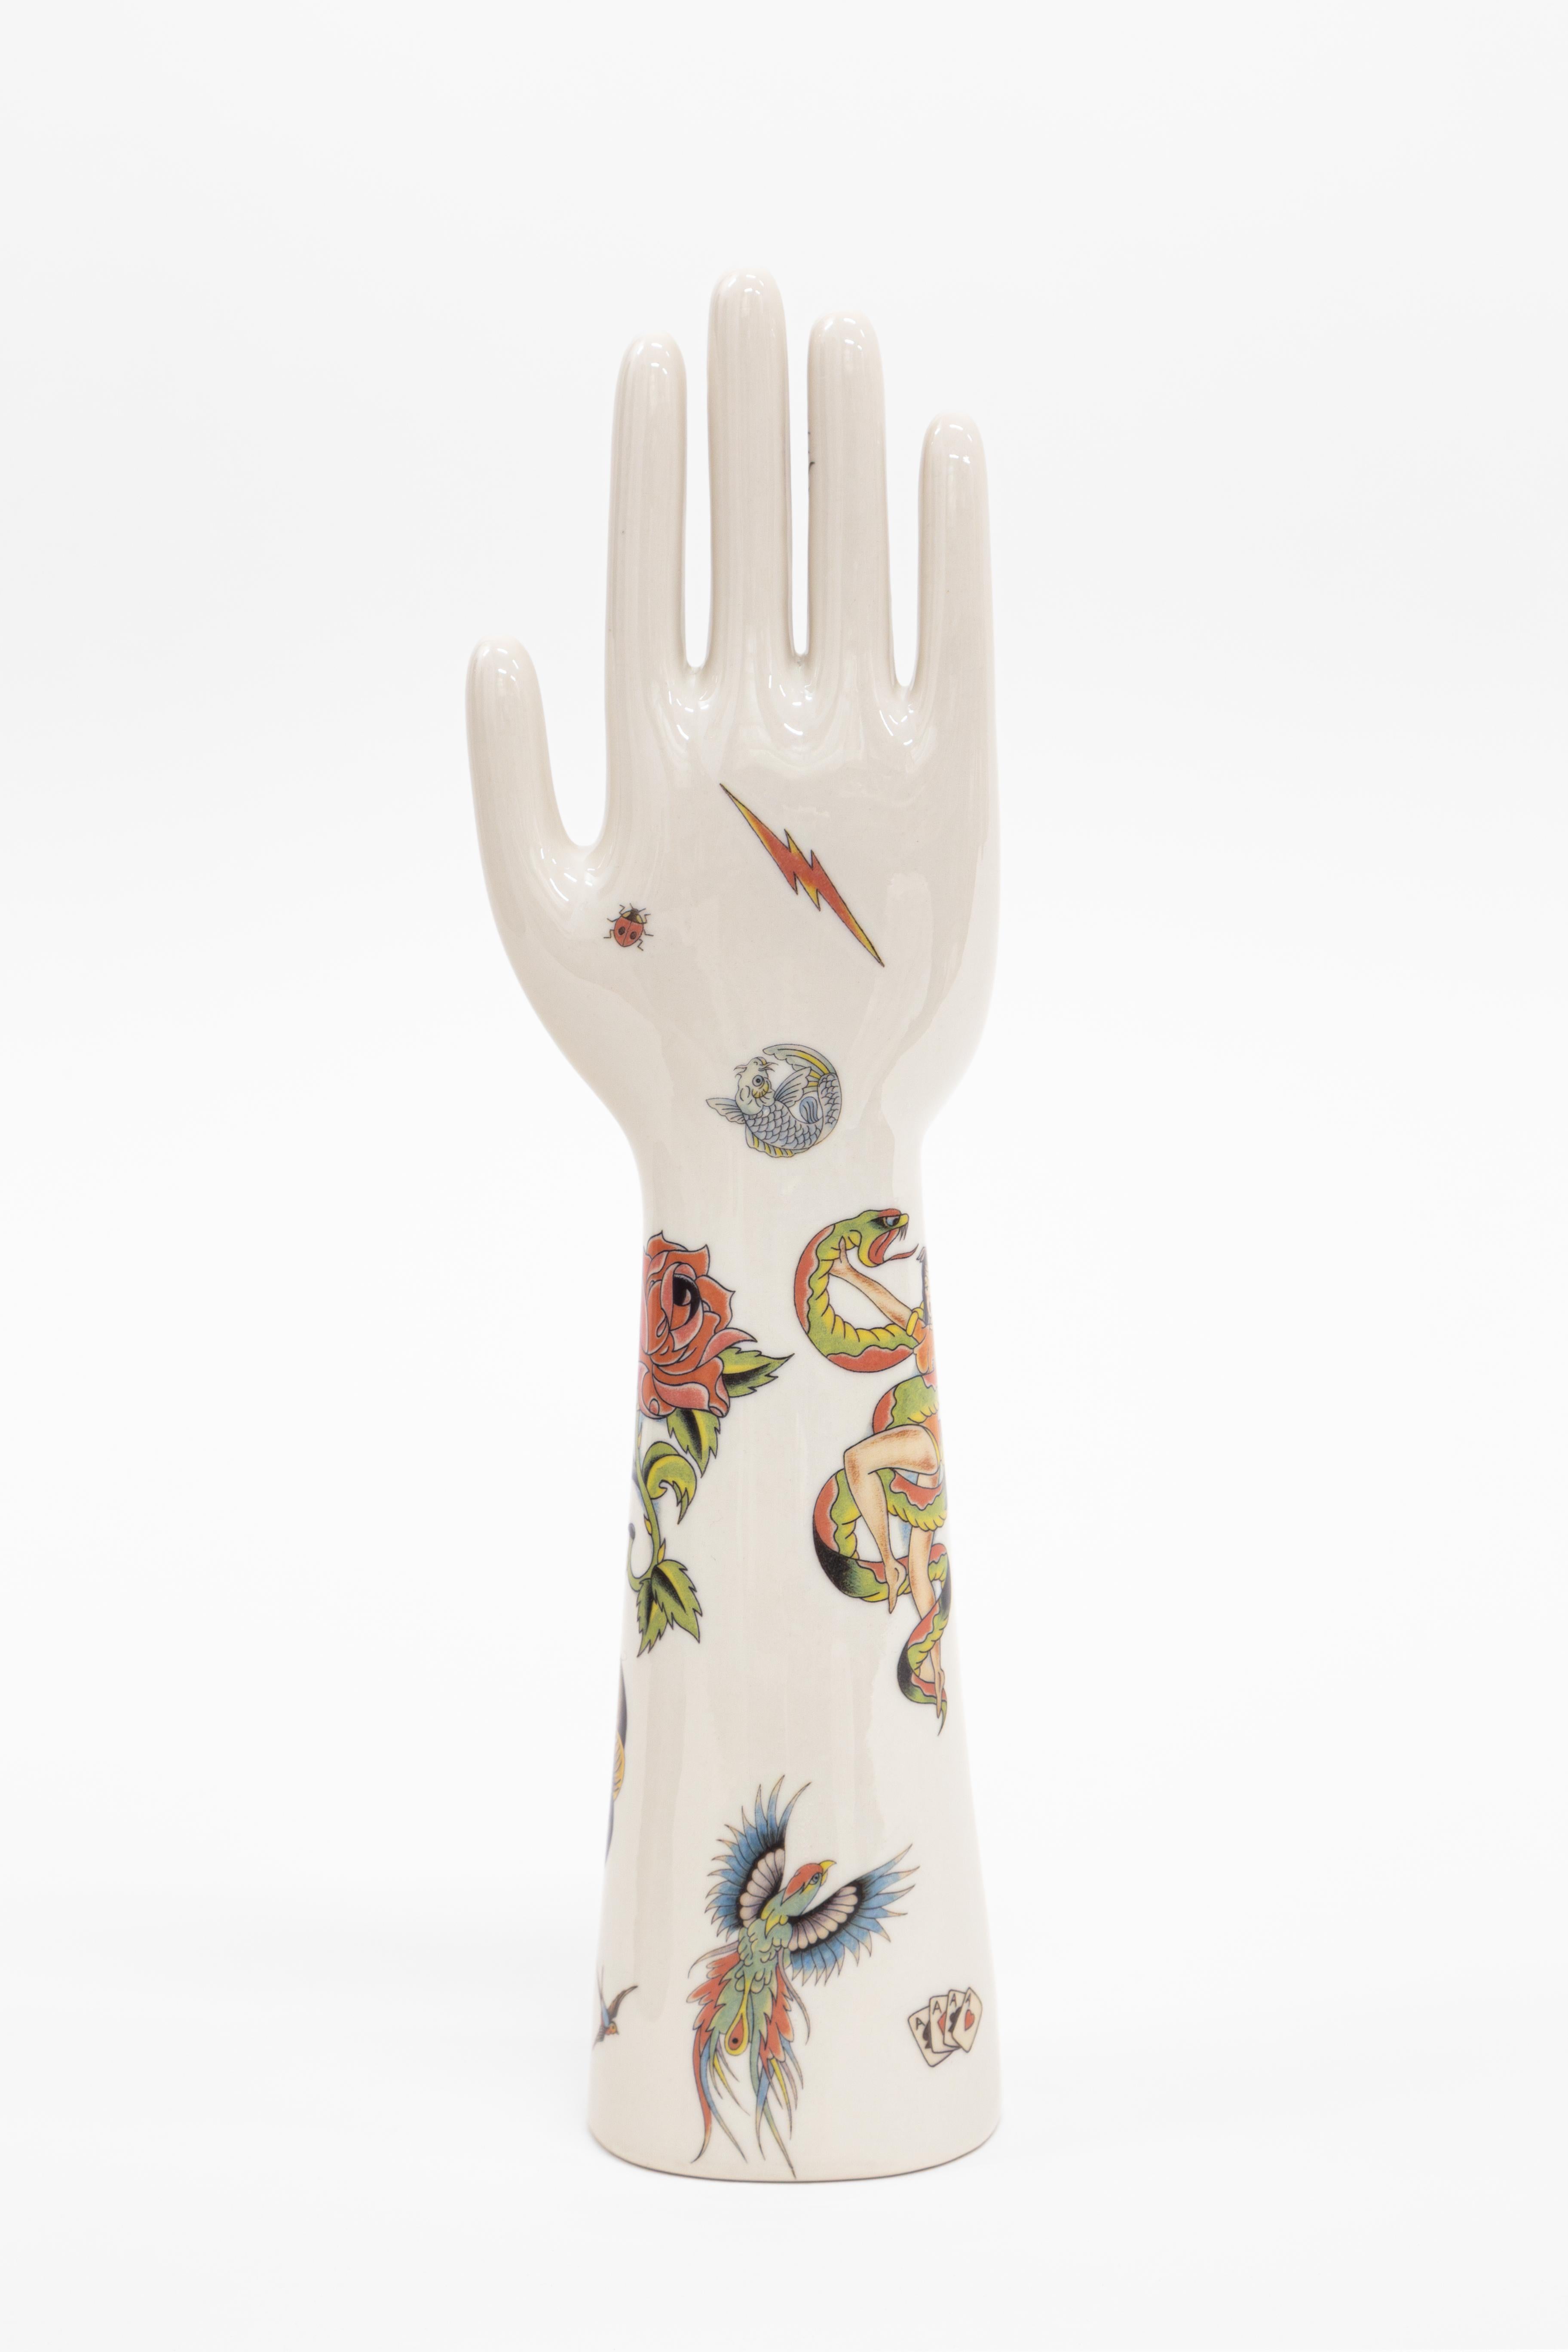 Le mani in porcellana della collezione Anatomica, creata da Vito Nesta per il suo brand Grand Tour, sono un oggetto di design intramontabile e di grande valore decorativo. La produzione di queste porcellane è affidata a Fratelli Majello che dal 1867